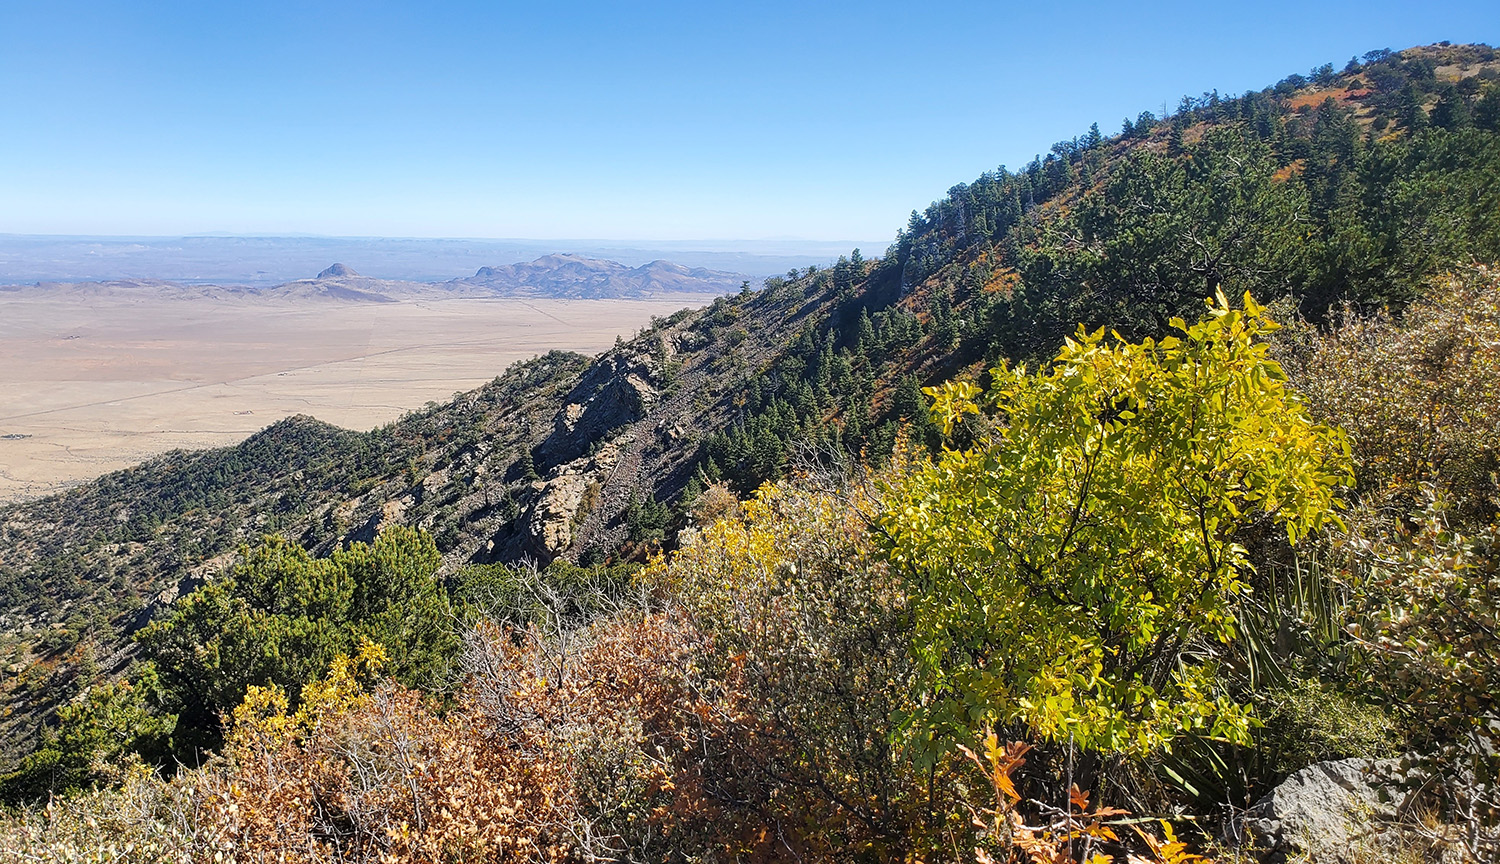 Fotografía de una montaña cubierta de vegetación que se eleva sobre las tierras bajas del desierto.